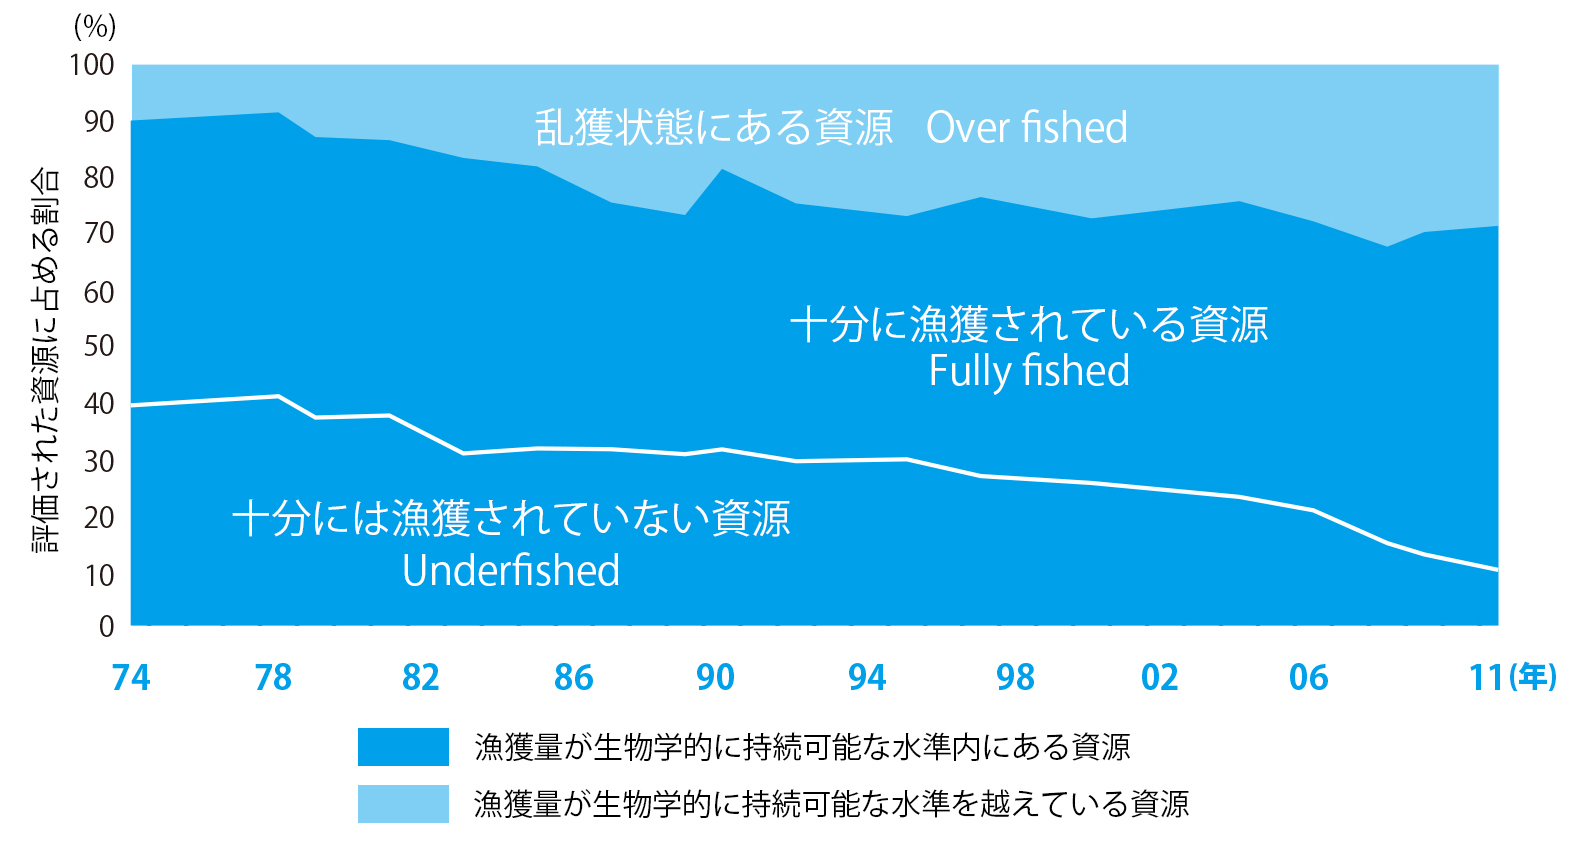 世界の海洋漁業資源の状況の推移のグラフ